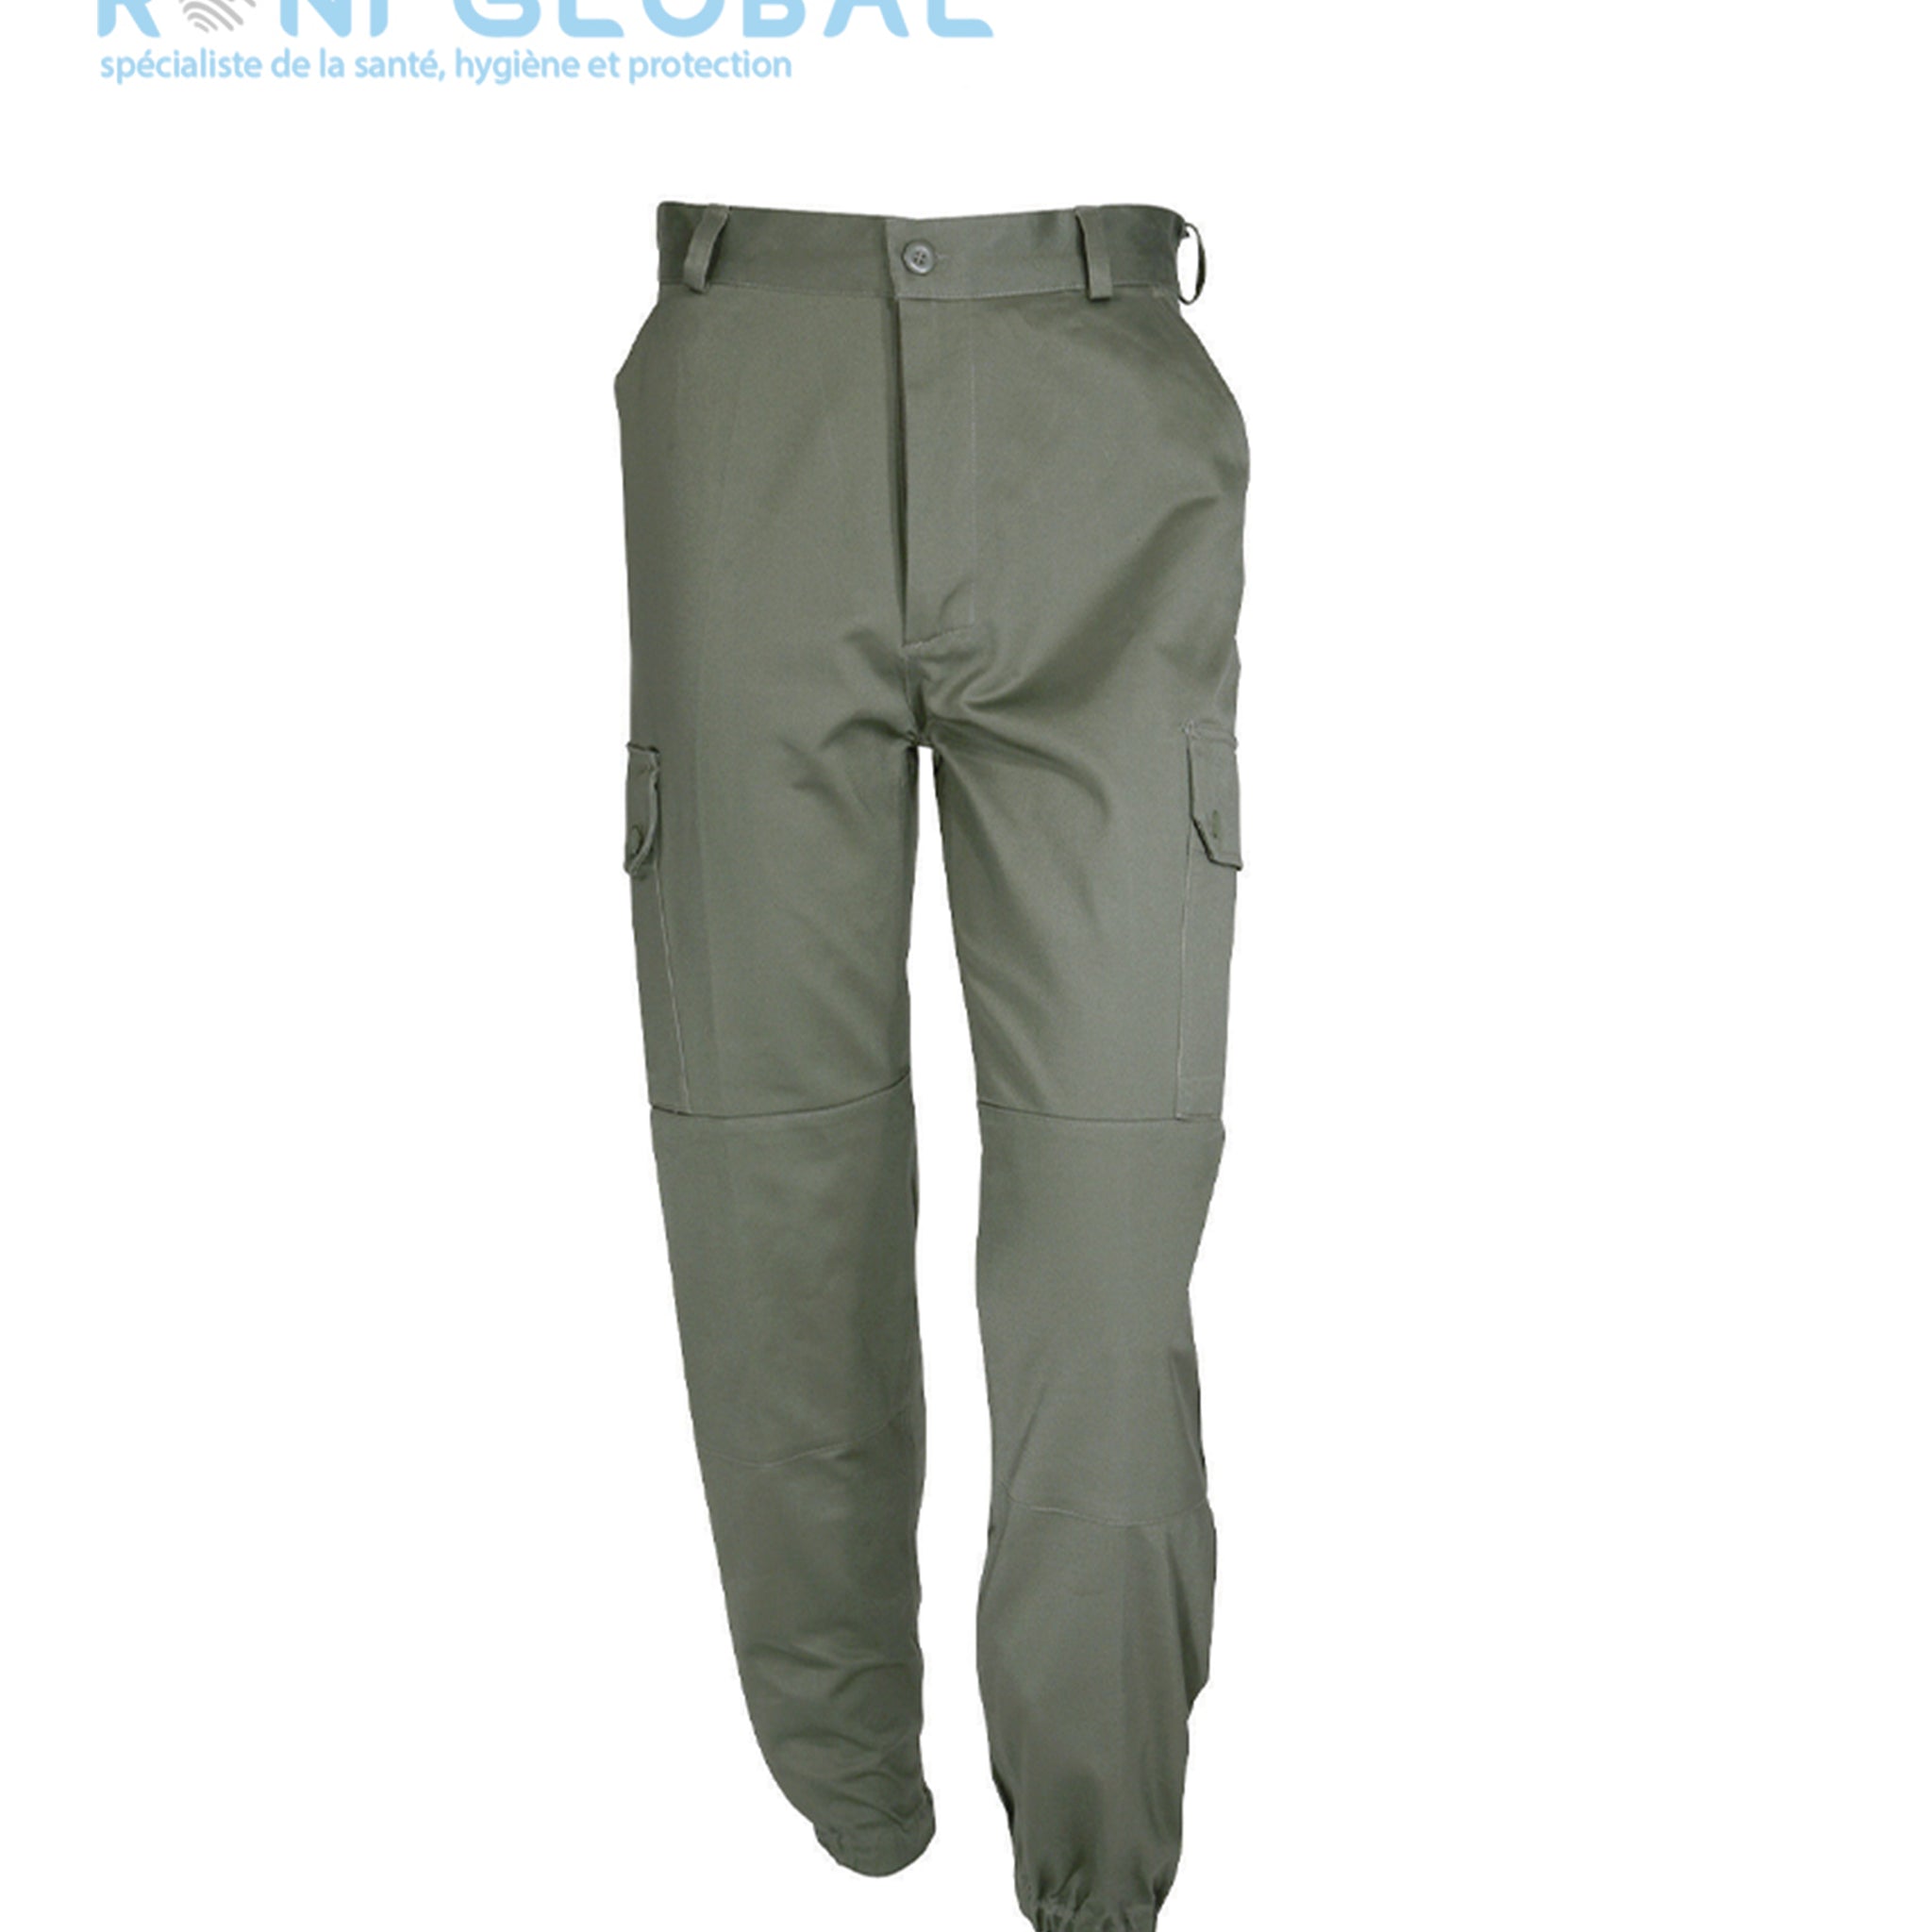 Pantalon de travail avec renforts aux genoux, en coton et polyester 4 poches - PANTALON F2 CITYGUARD